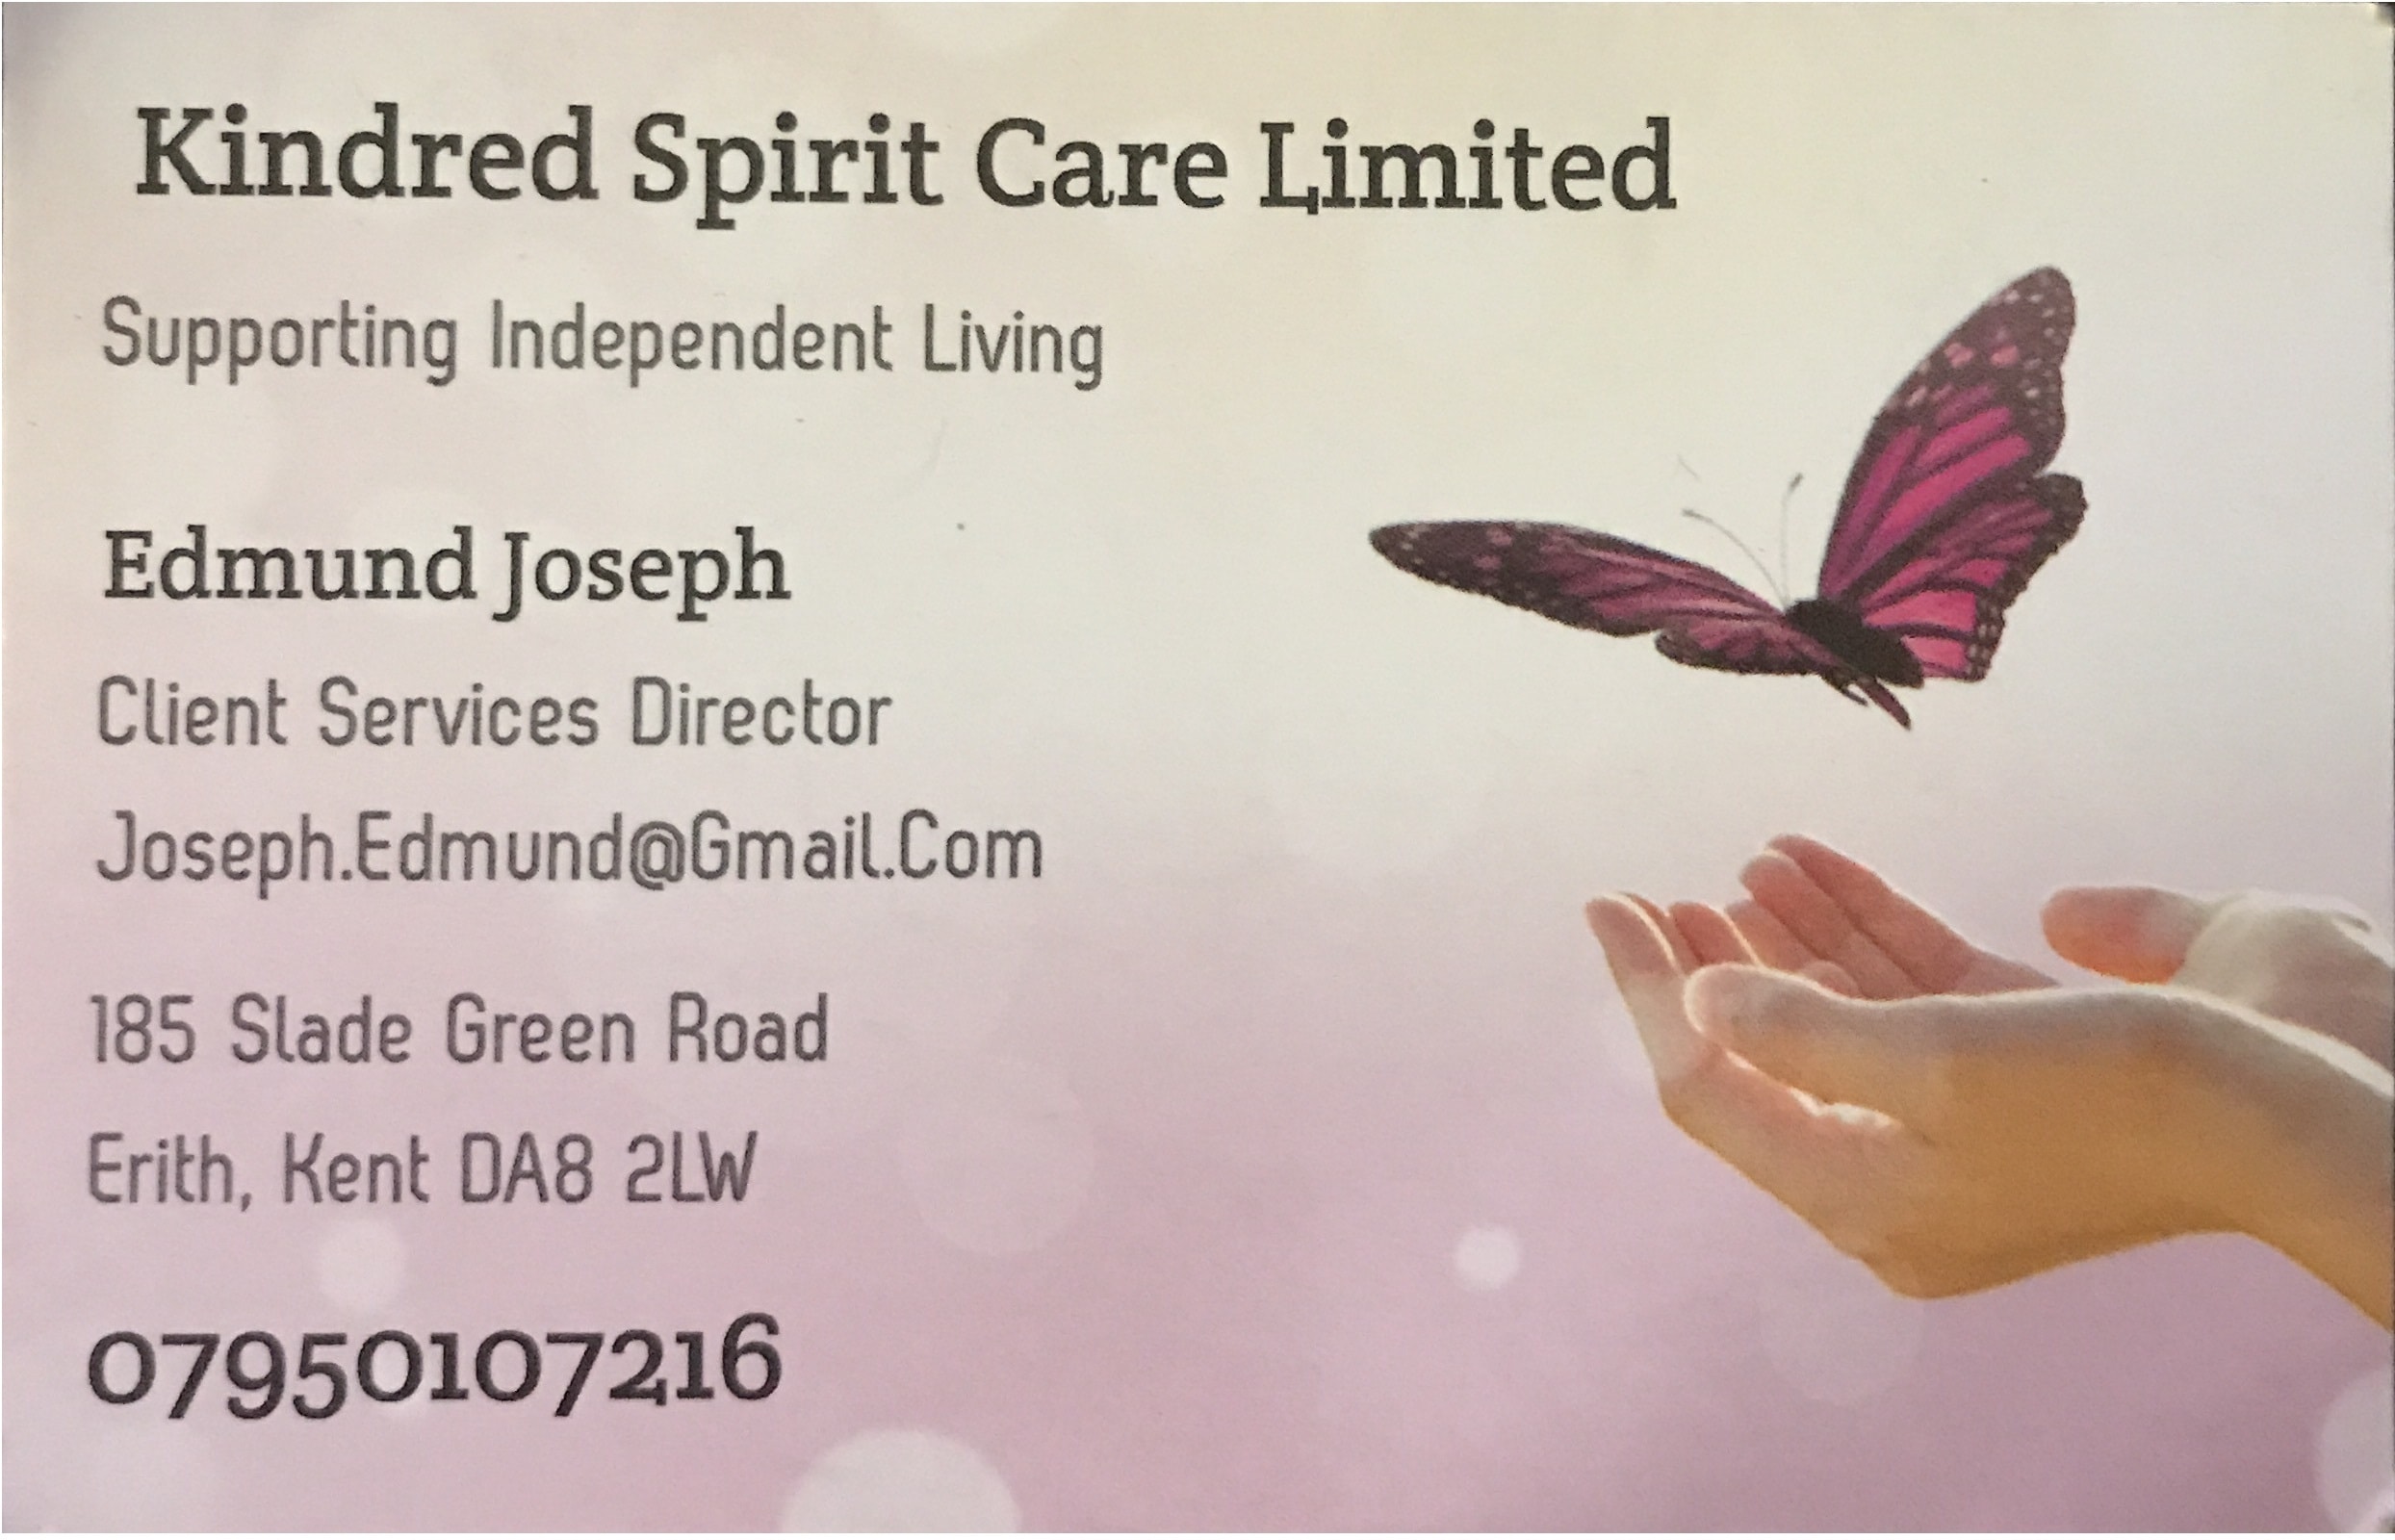 Kindred Spirit Care Limited